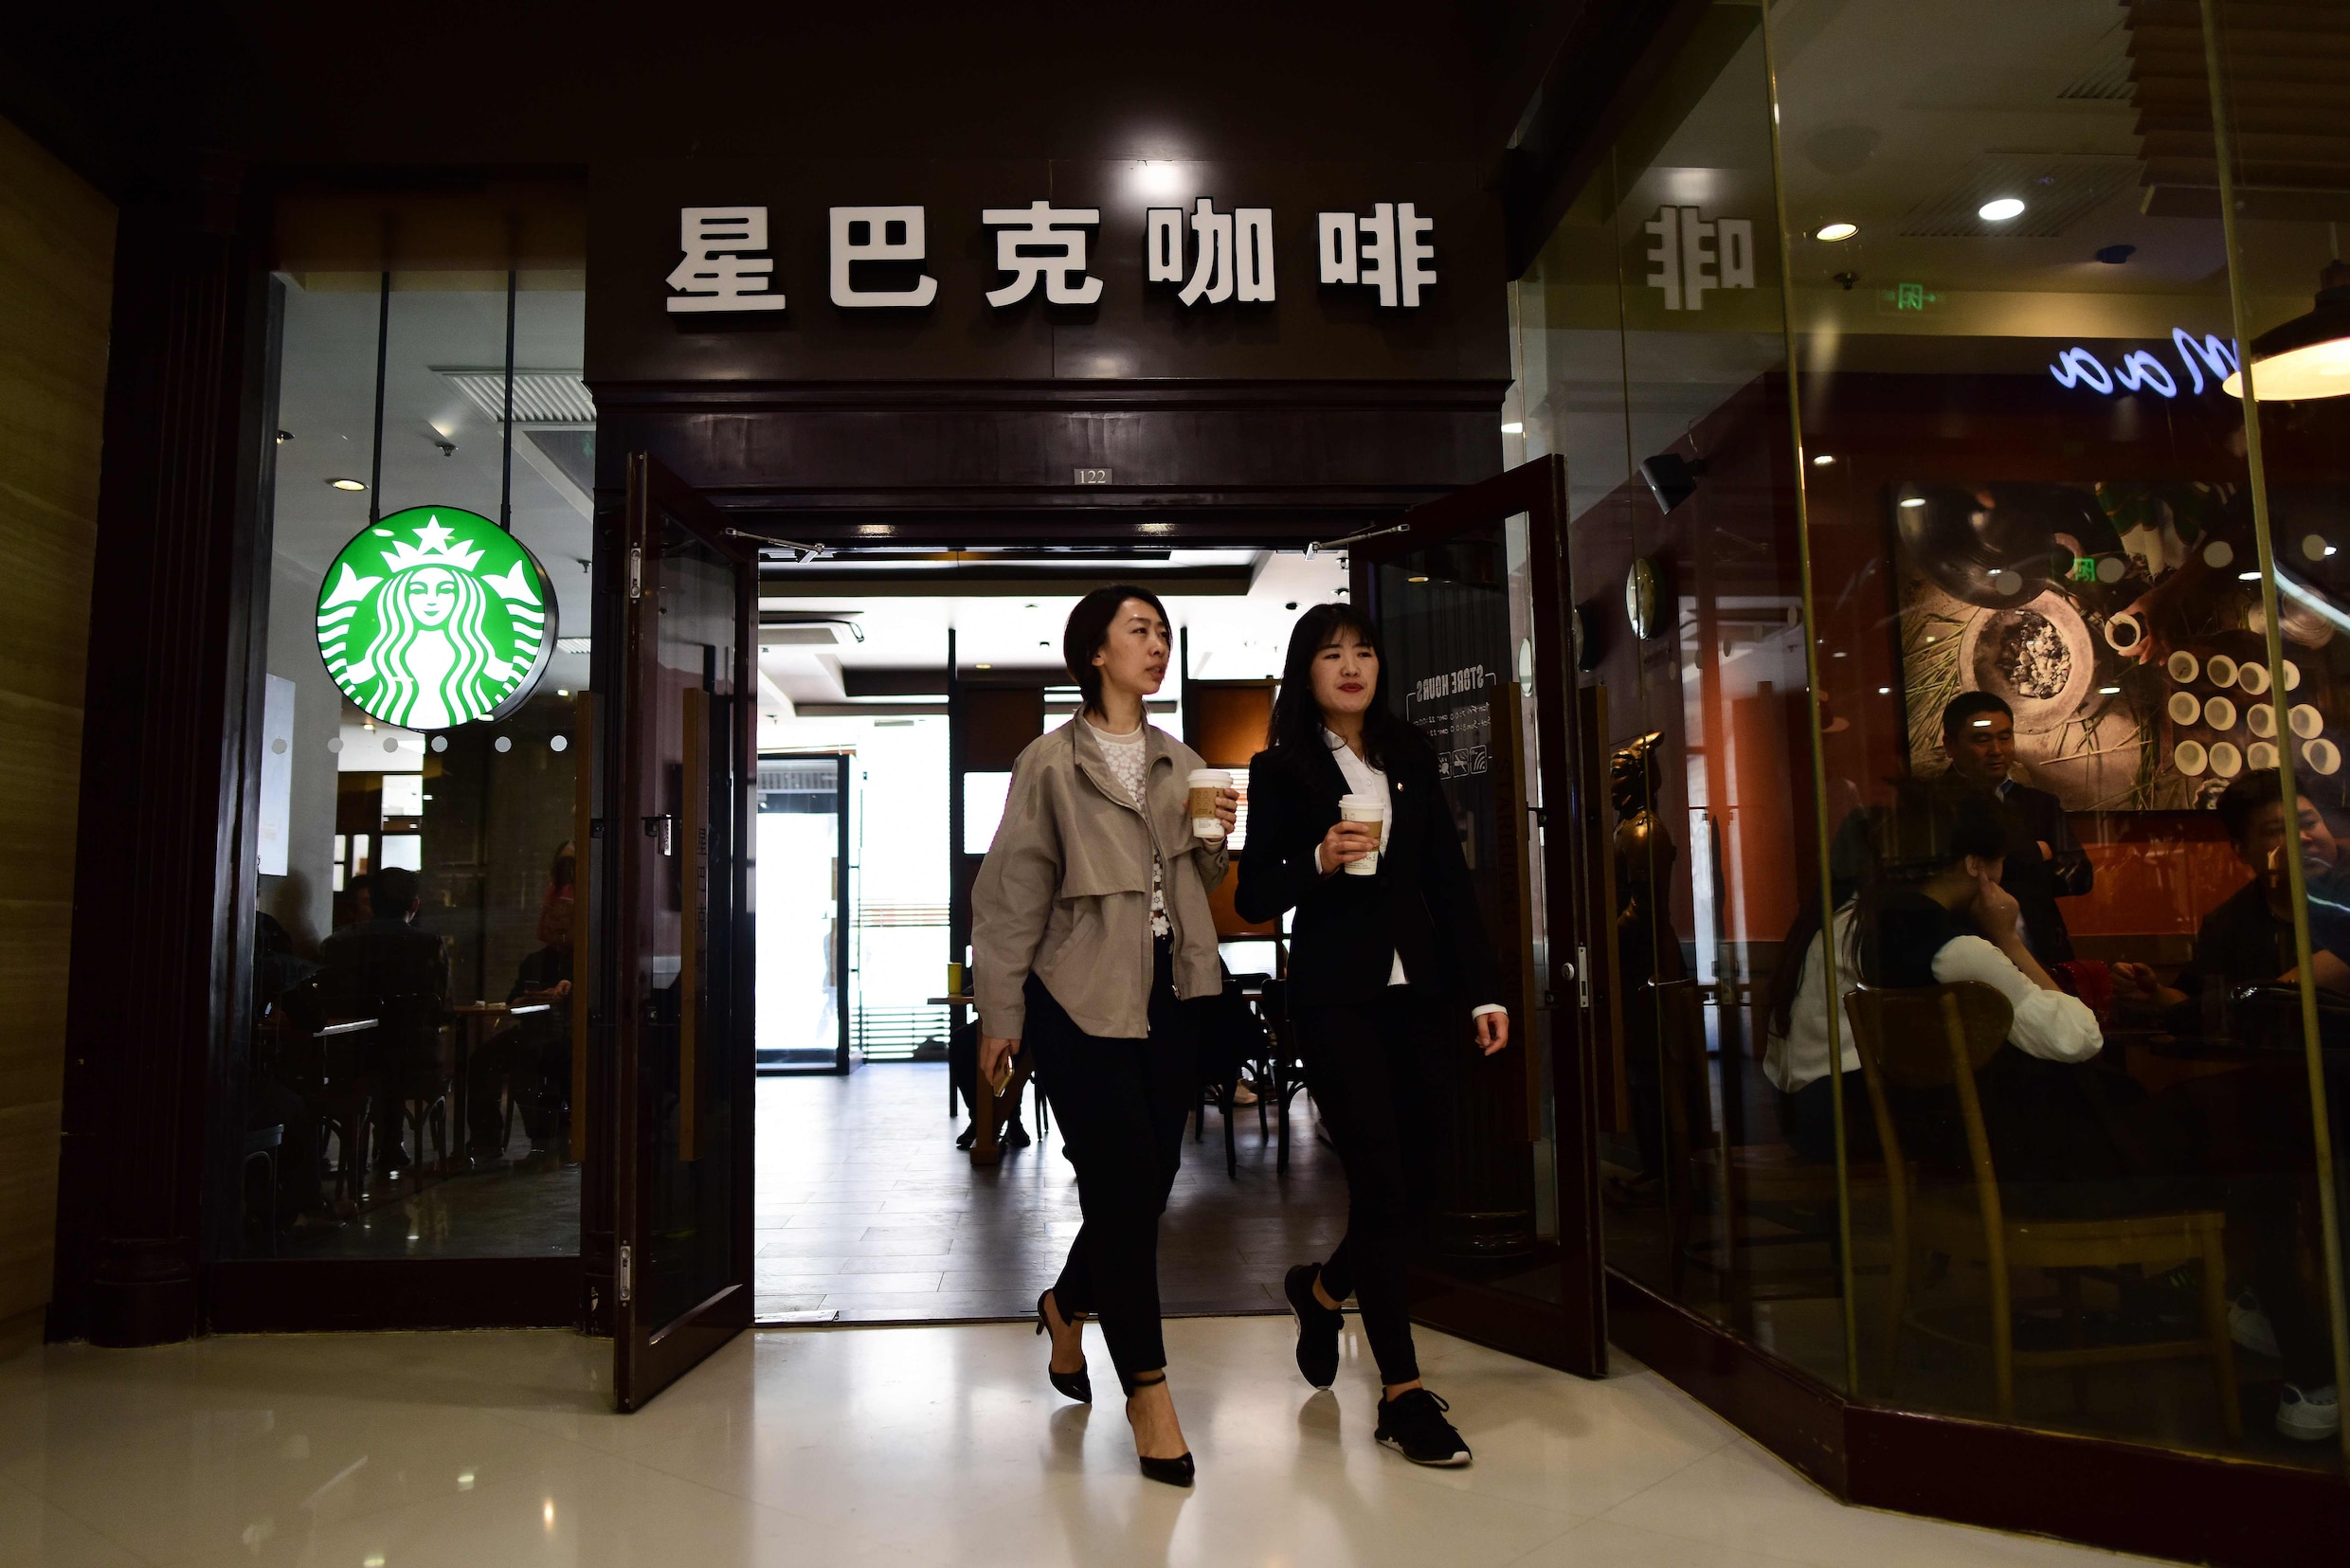 Waarom een Chinees uit Peking in de Starbucks een andere plek kiest dan eentje uit het zuiden